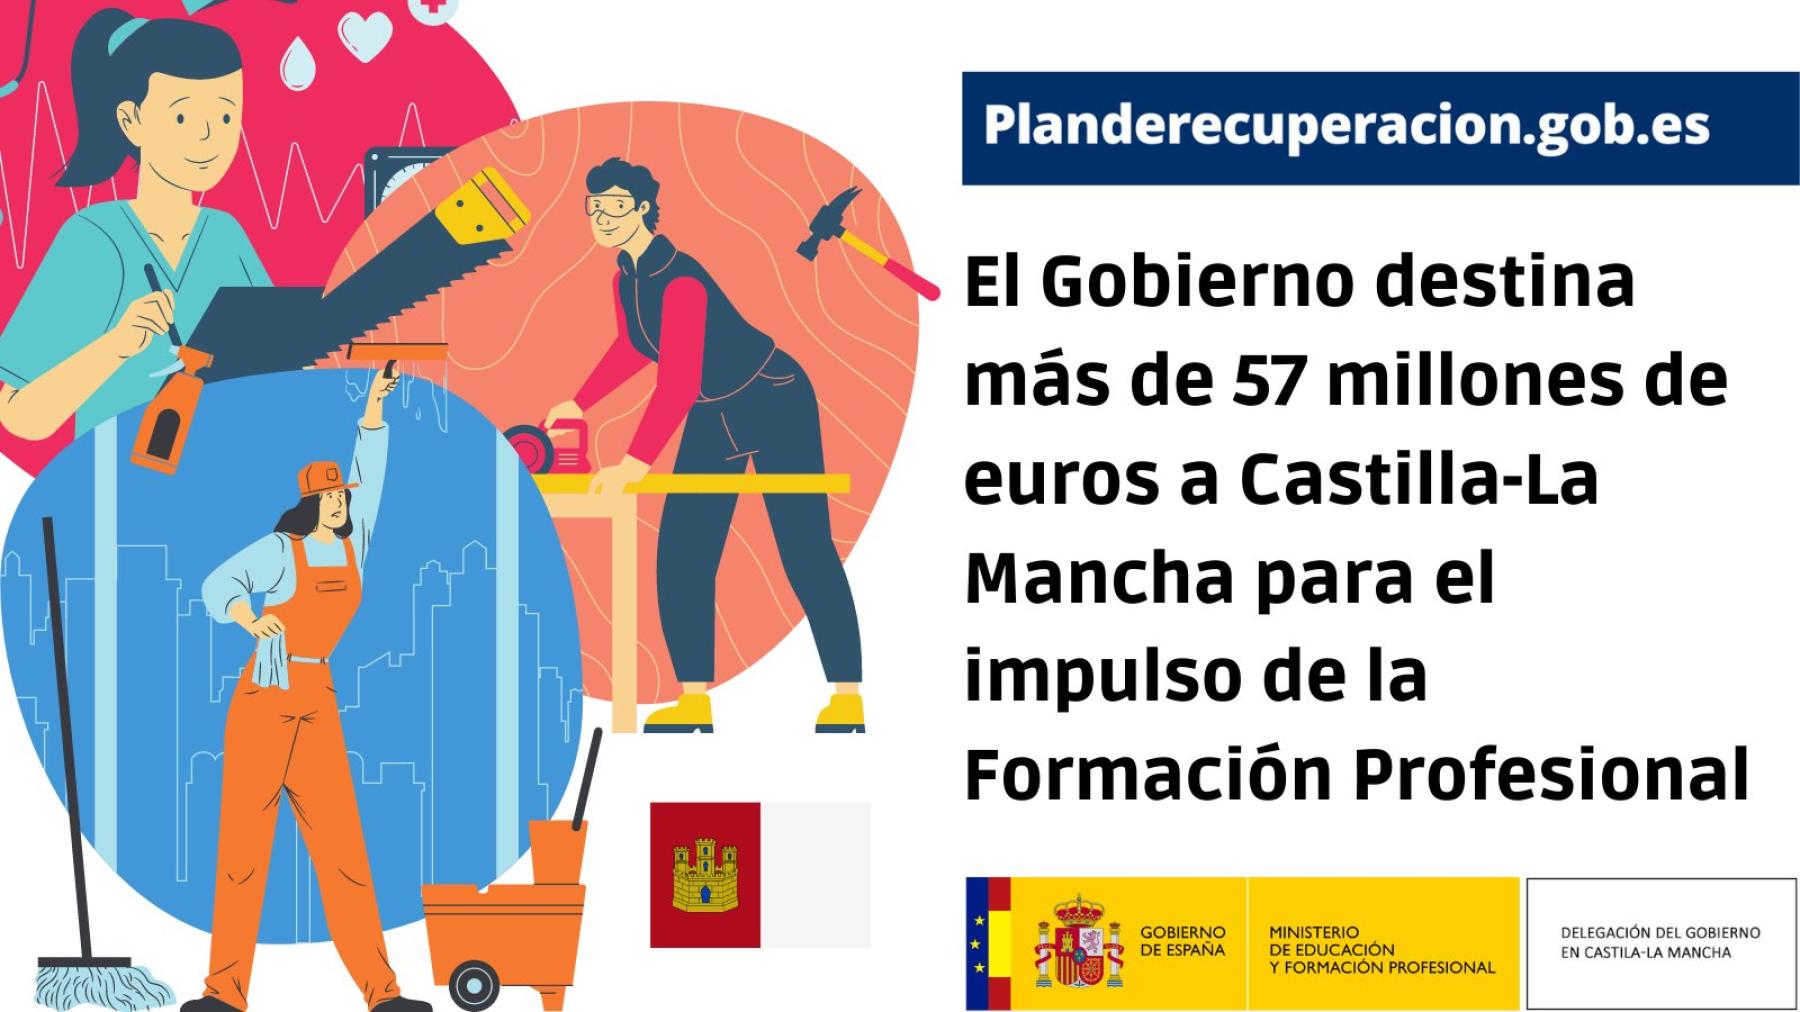 El Gobierno destina más de 57 millones de euros a Castilla-La Mancha para el impulso de la Formación Profesional